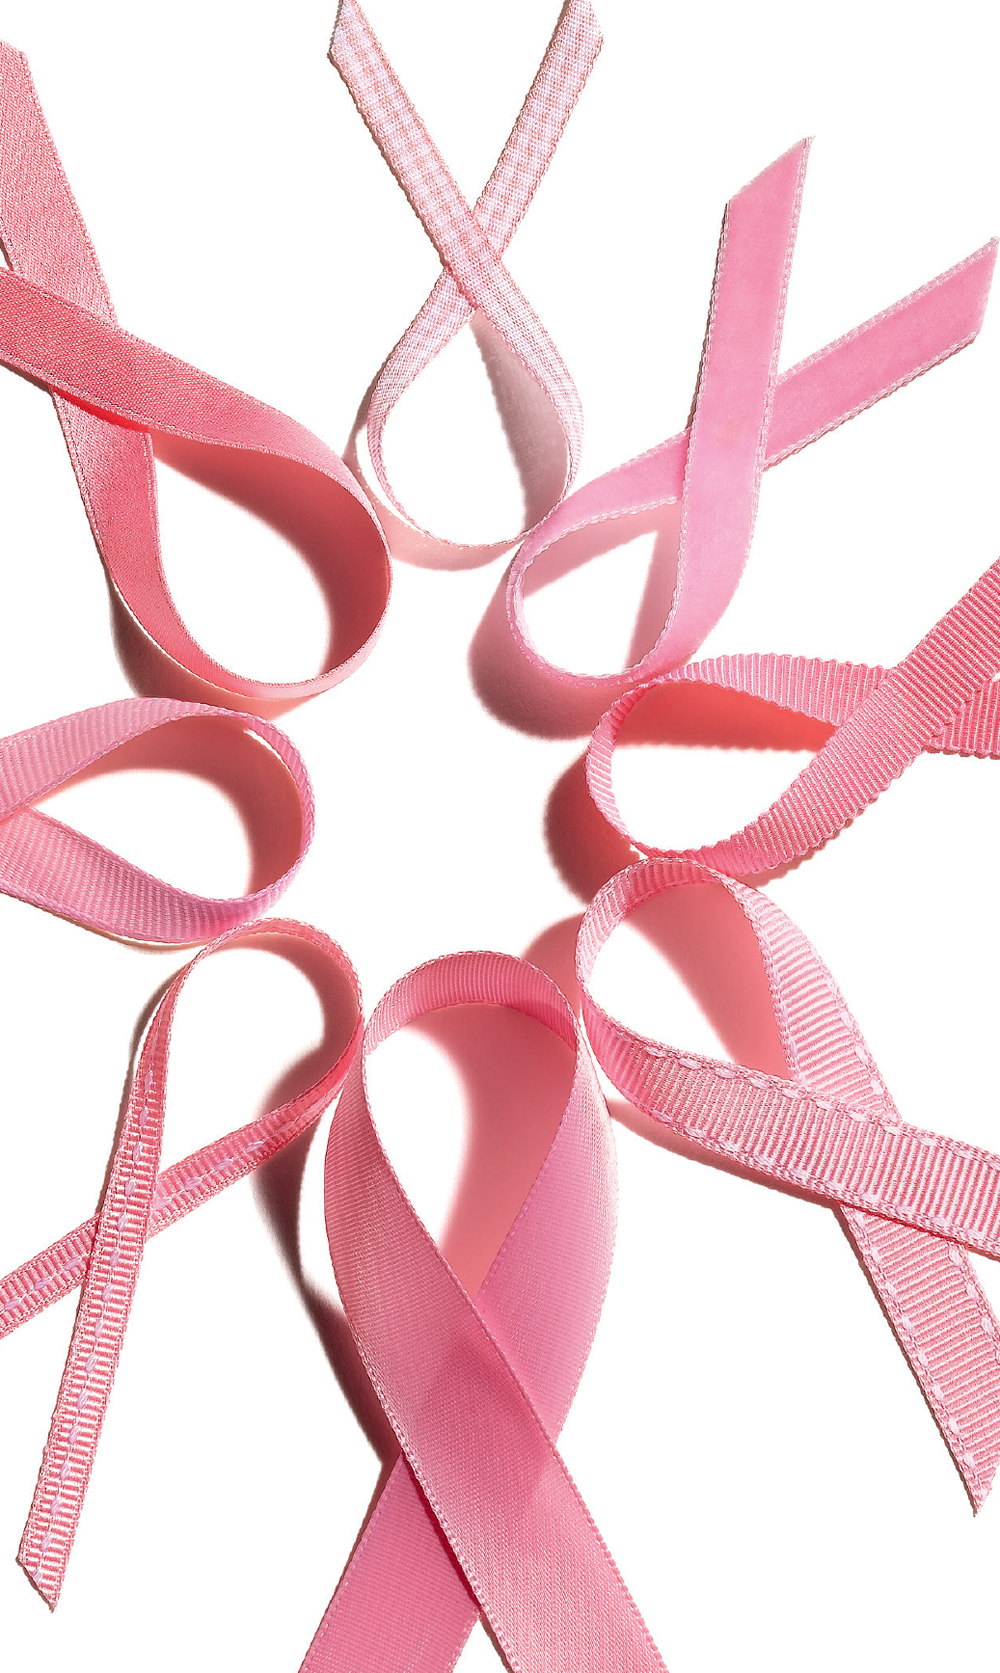 Der Brustkrebsmonat Oktober wird wieder richtig: pink – und auf sonrisa gibt es jetzt schon die schönsten Charity-Highlights, mit denen auch Du die gute Sache unterstützen kannst. 